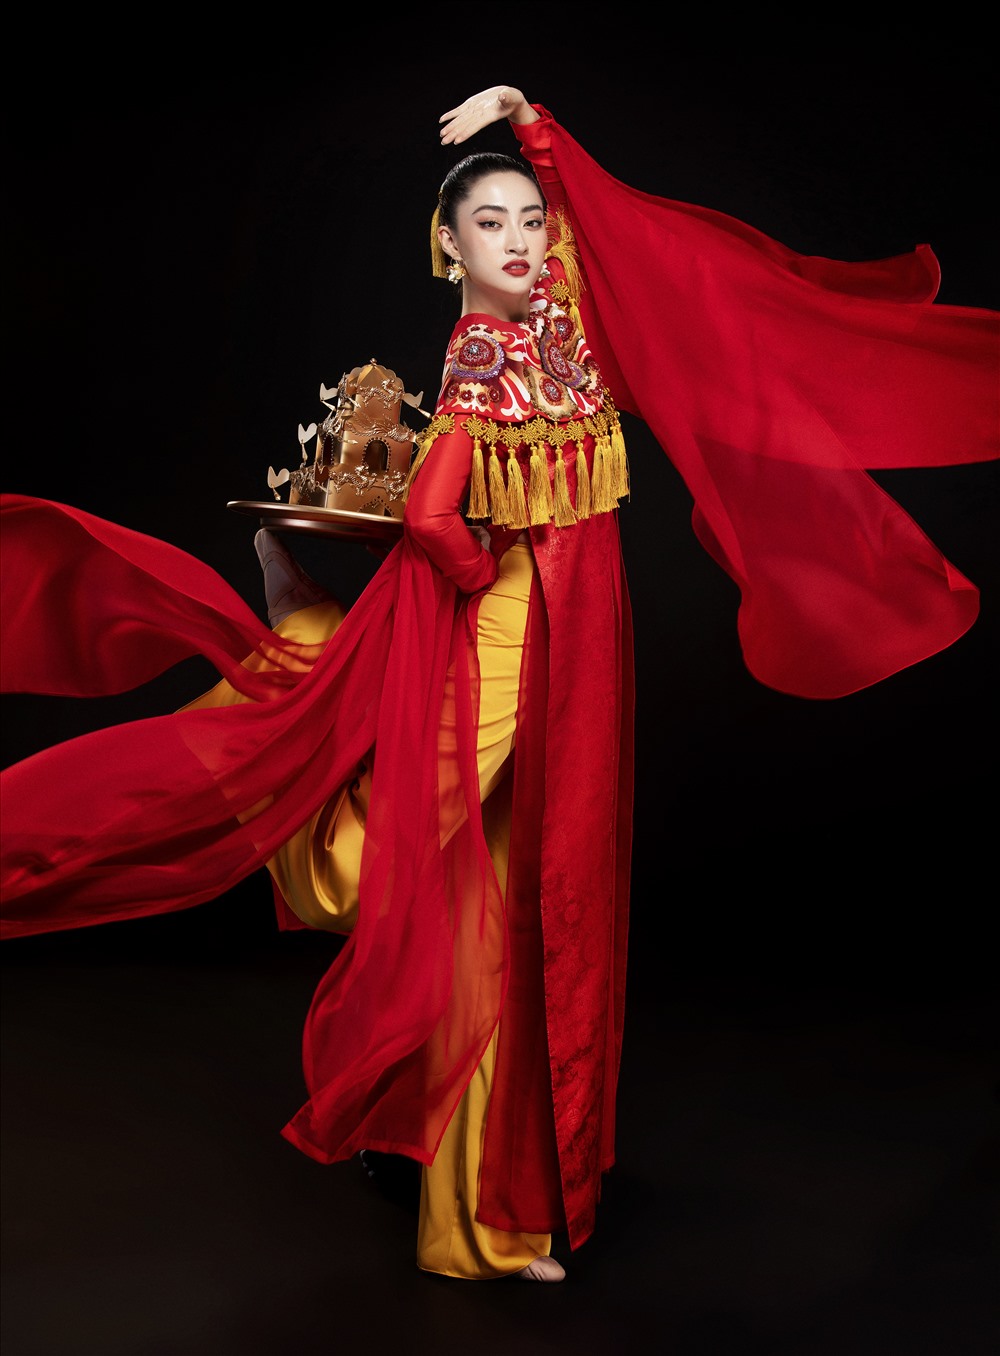 Bên cạnh bài múa được chuẩn bị kỹ càng, Hoa hậu Lương Thuỳ Linh còn lựa chọn bộ trang phục đặc sắc mang đậm dấu ấn văn hoá Việt Nam nhằm mang lại màn trình diễn ấn tượng với bạn bè quốc tế. Ảnh: Lê Thiện Viễn.